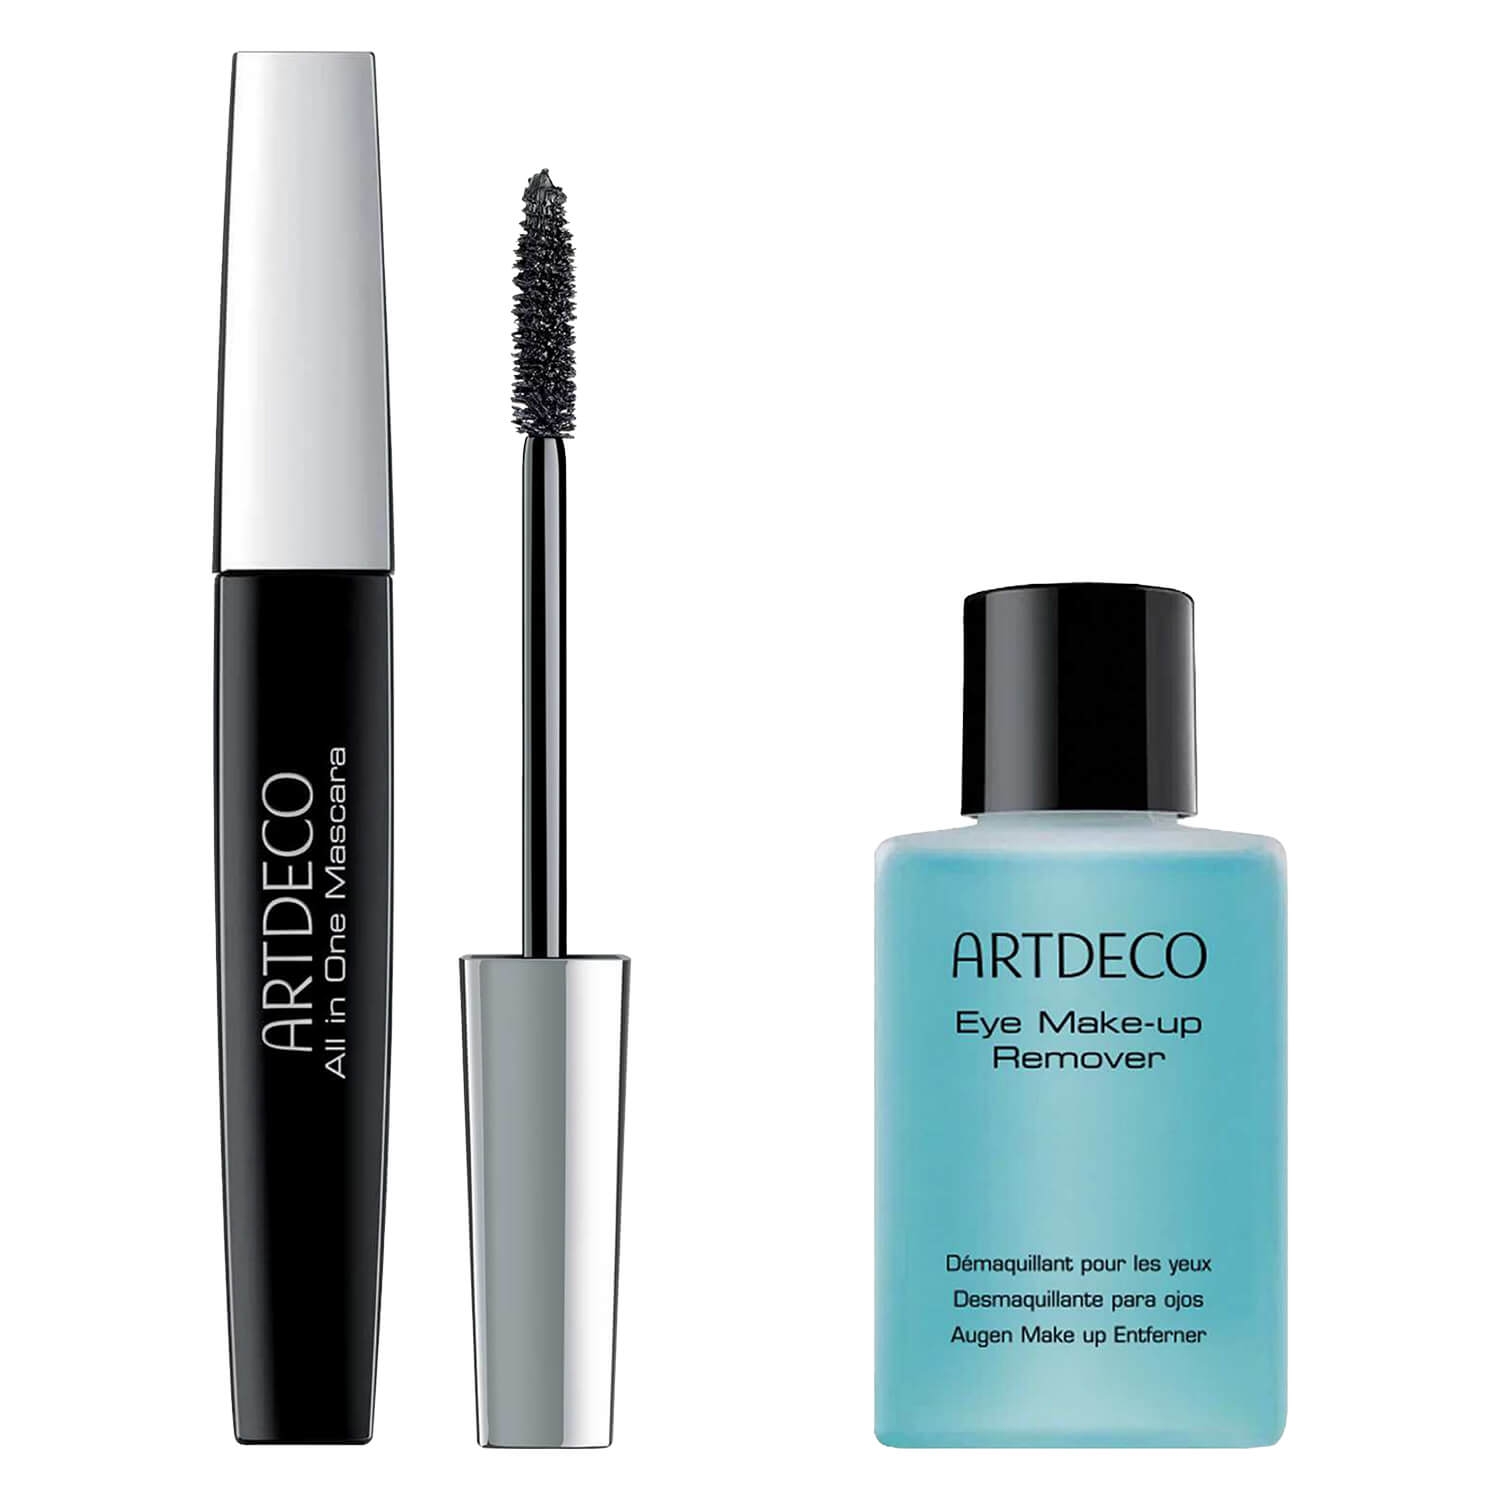 Produktbild von Artdeco Specials - All in One Mascara & Eye Make Make-up Remover Set